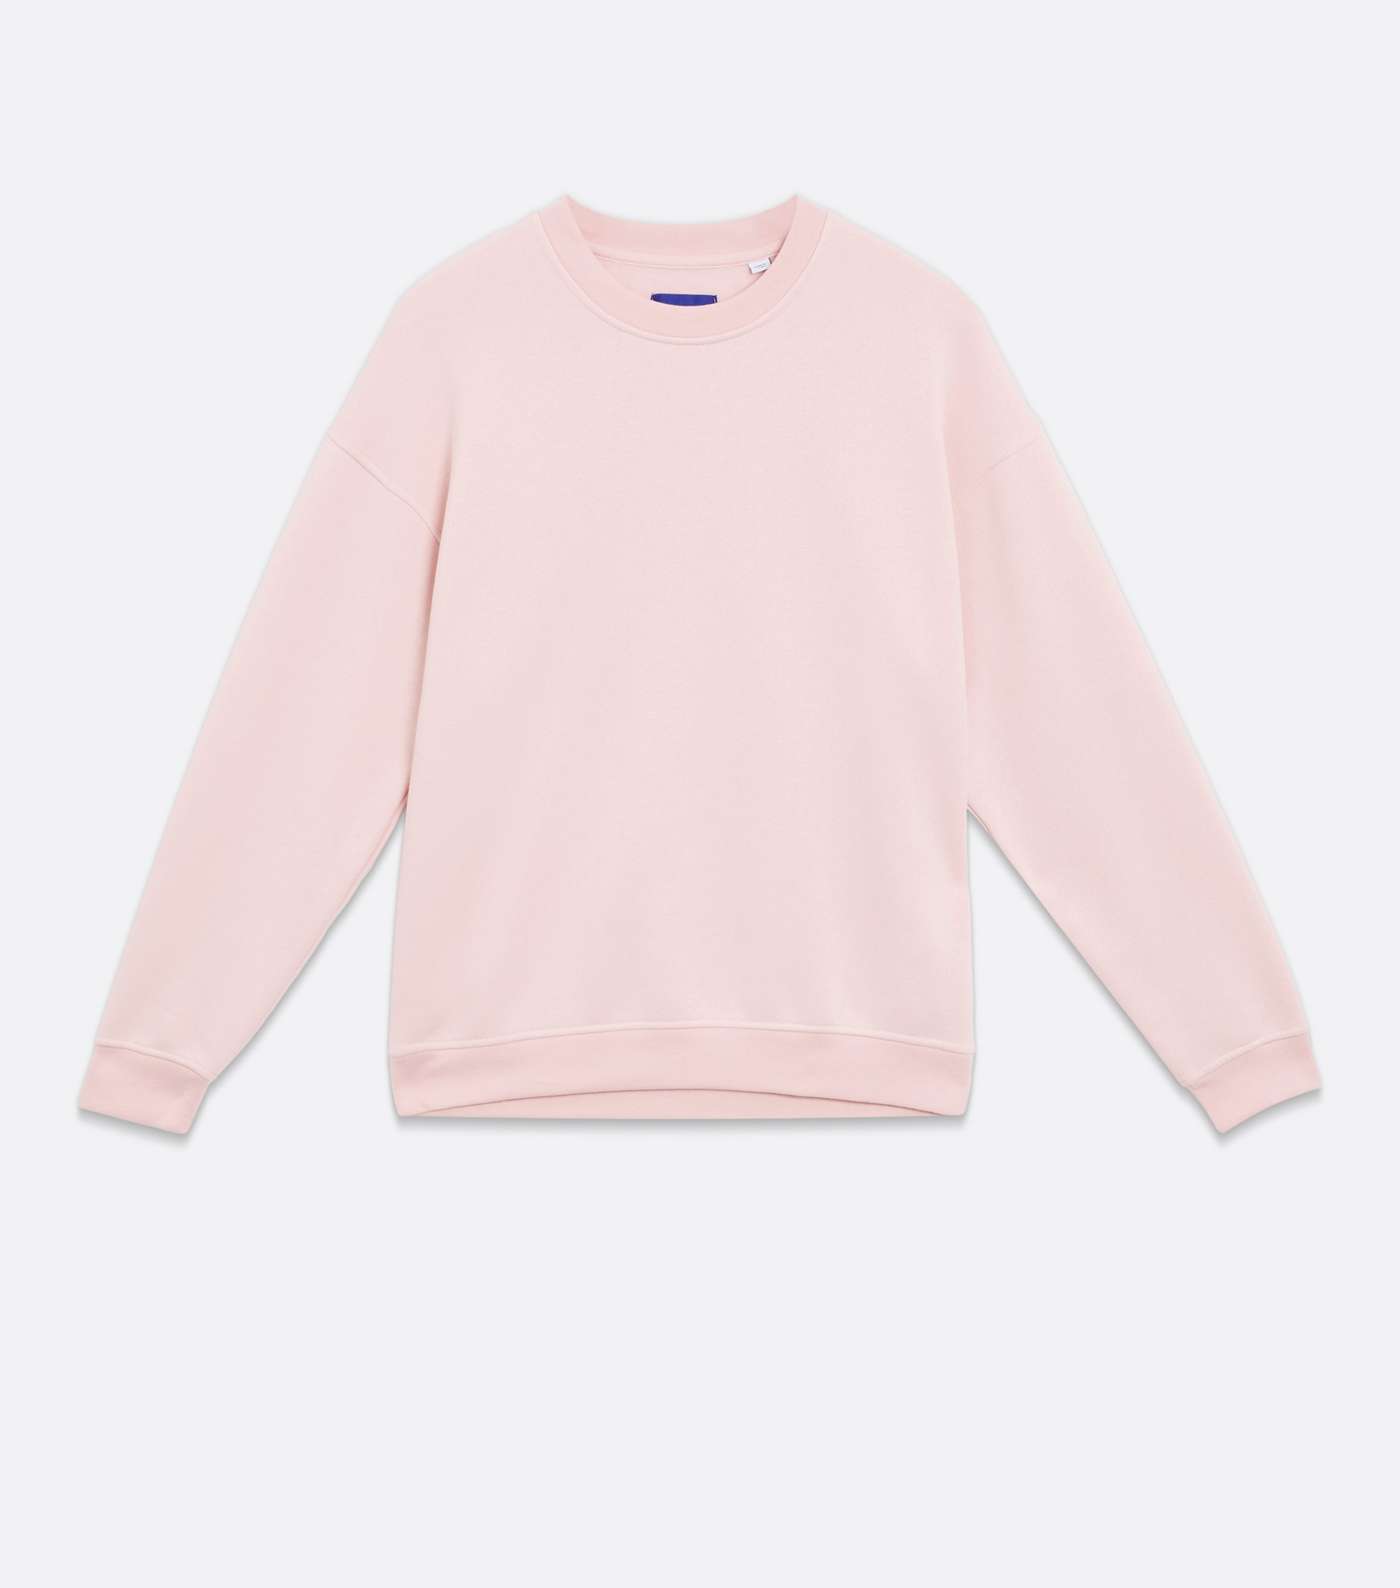 Jack & Jones Pale Pink Jersey Sweatshirt Image 5